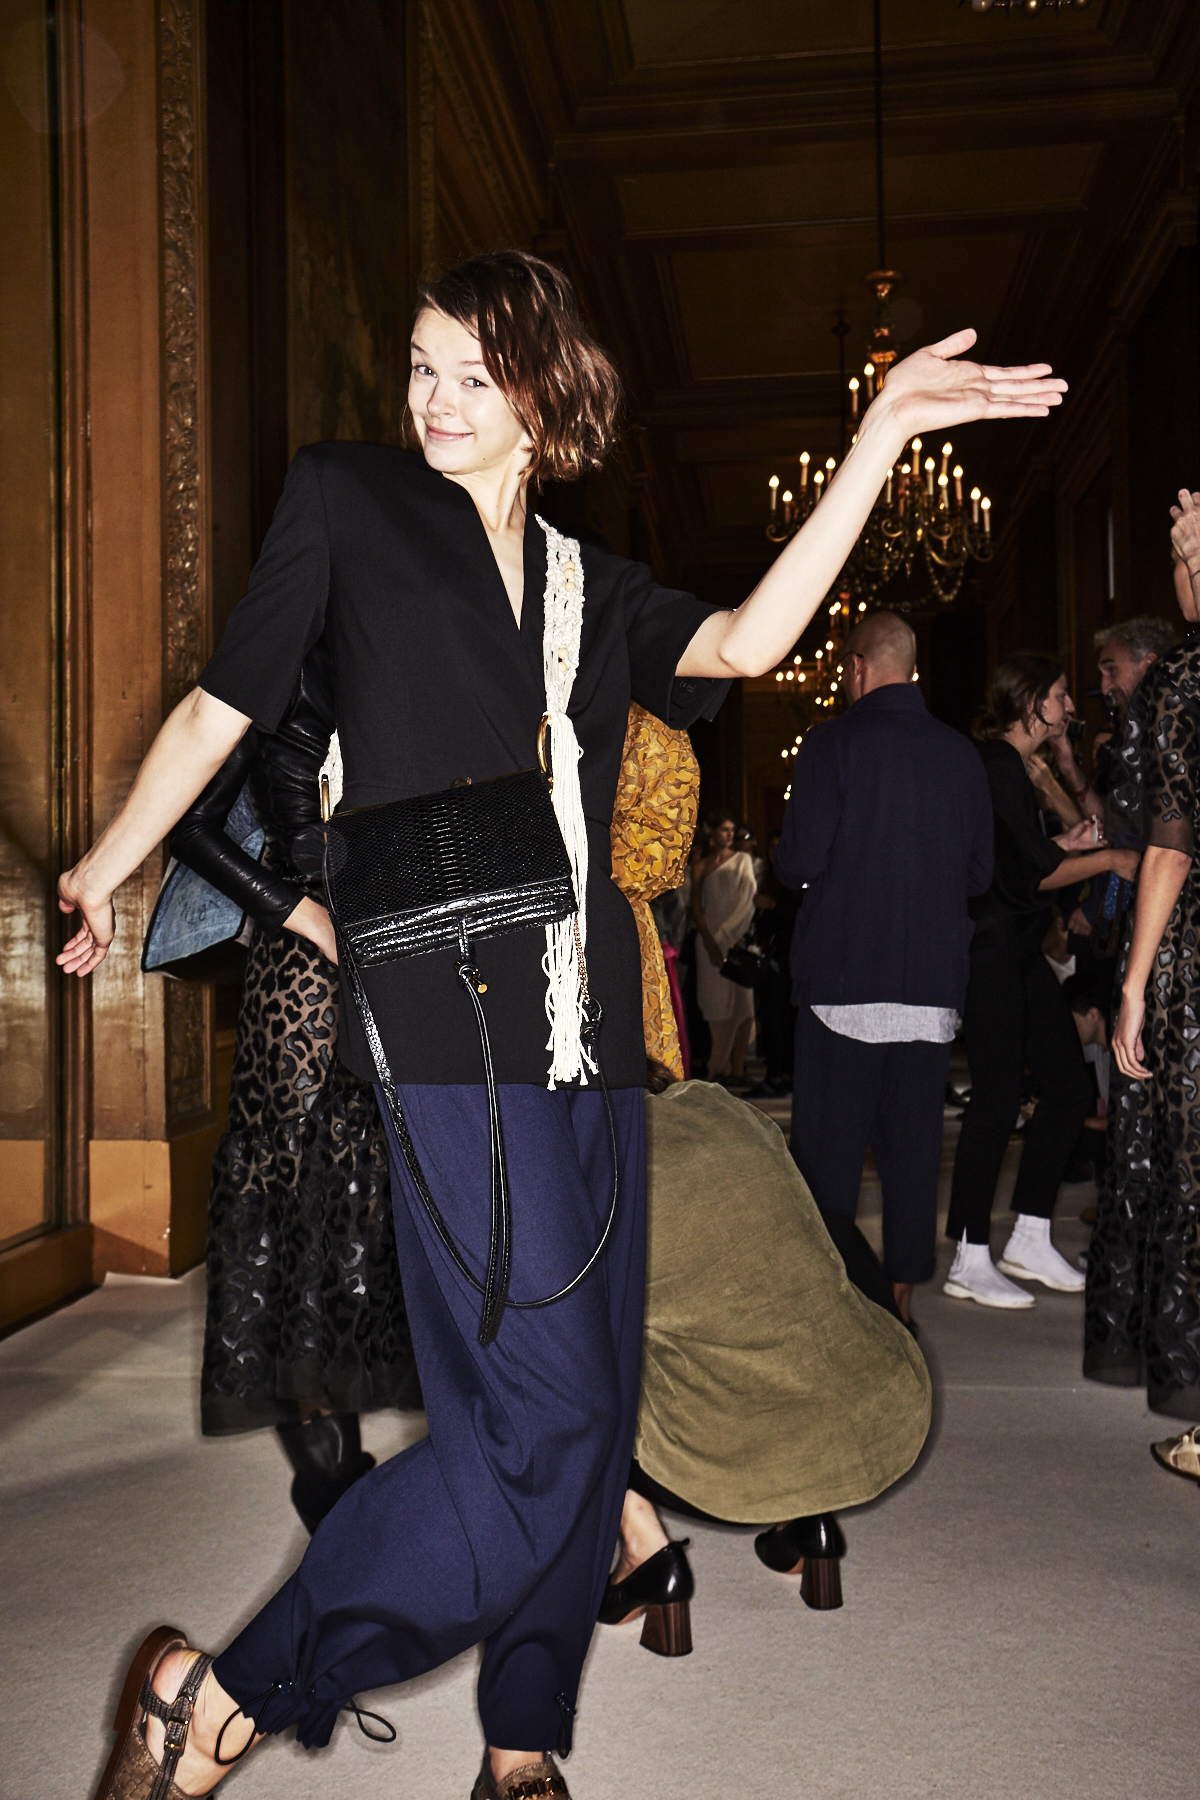 Auf dem Foto ist ein Model im Backstage Bereich bei der Frühjahr/Sommermodenschau 2018 von Designerin Stella Mc Cartney zu sehen. Sie kombiniert die Trendfarben Schwarz und Blau in Form eines halbarm Blazers und einer dunkelblauen Hose miteinander. Dazu kombiniert sie eine schwarze Crossover-Bag und einen weißen Schal.